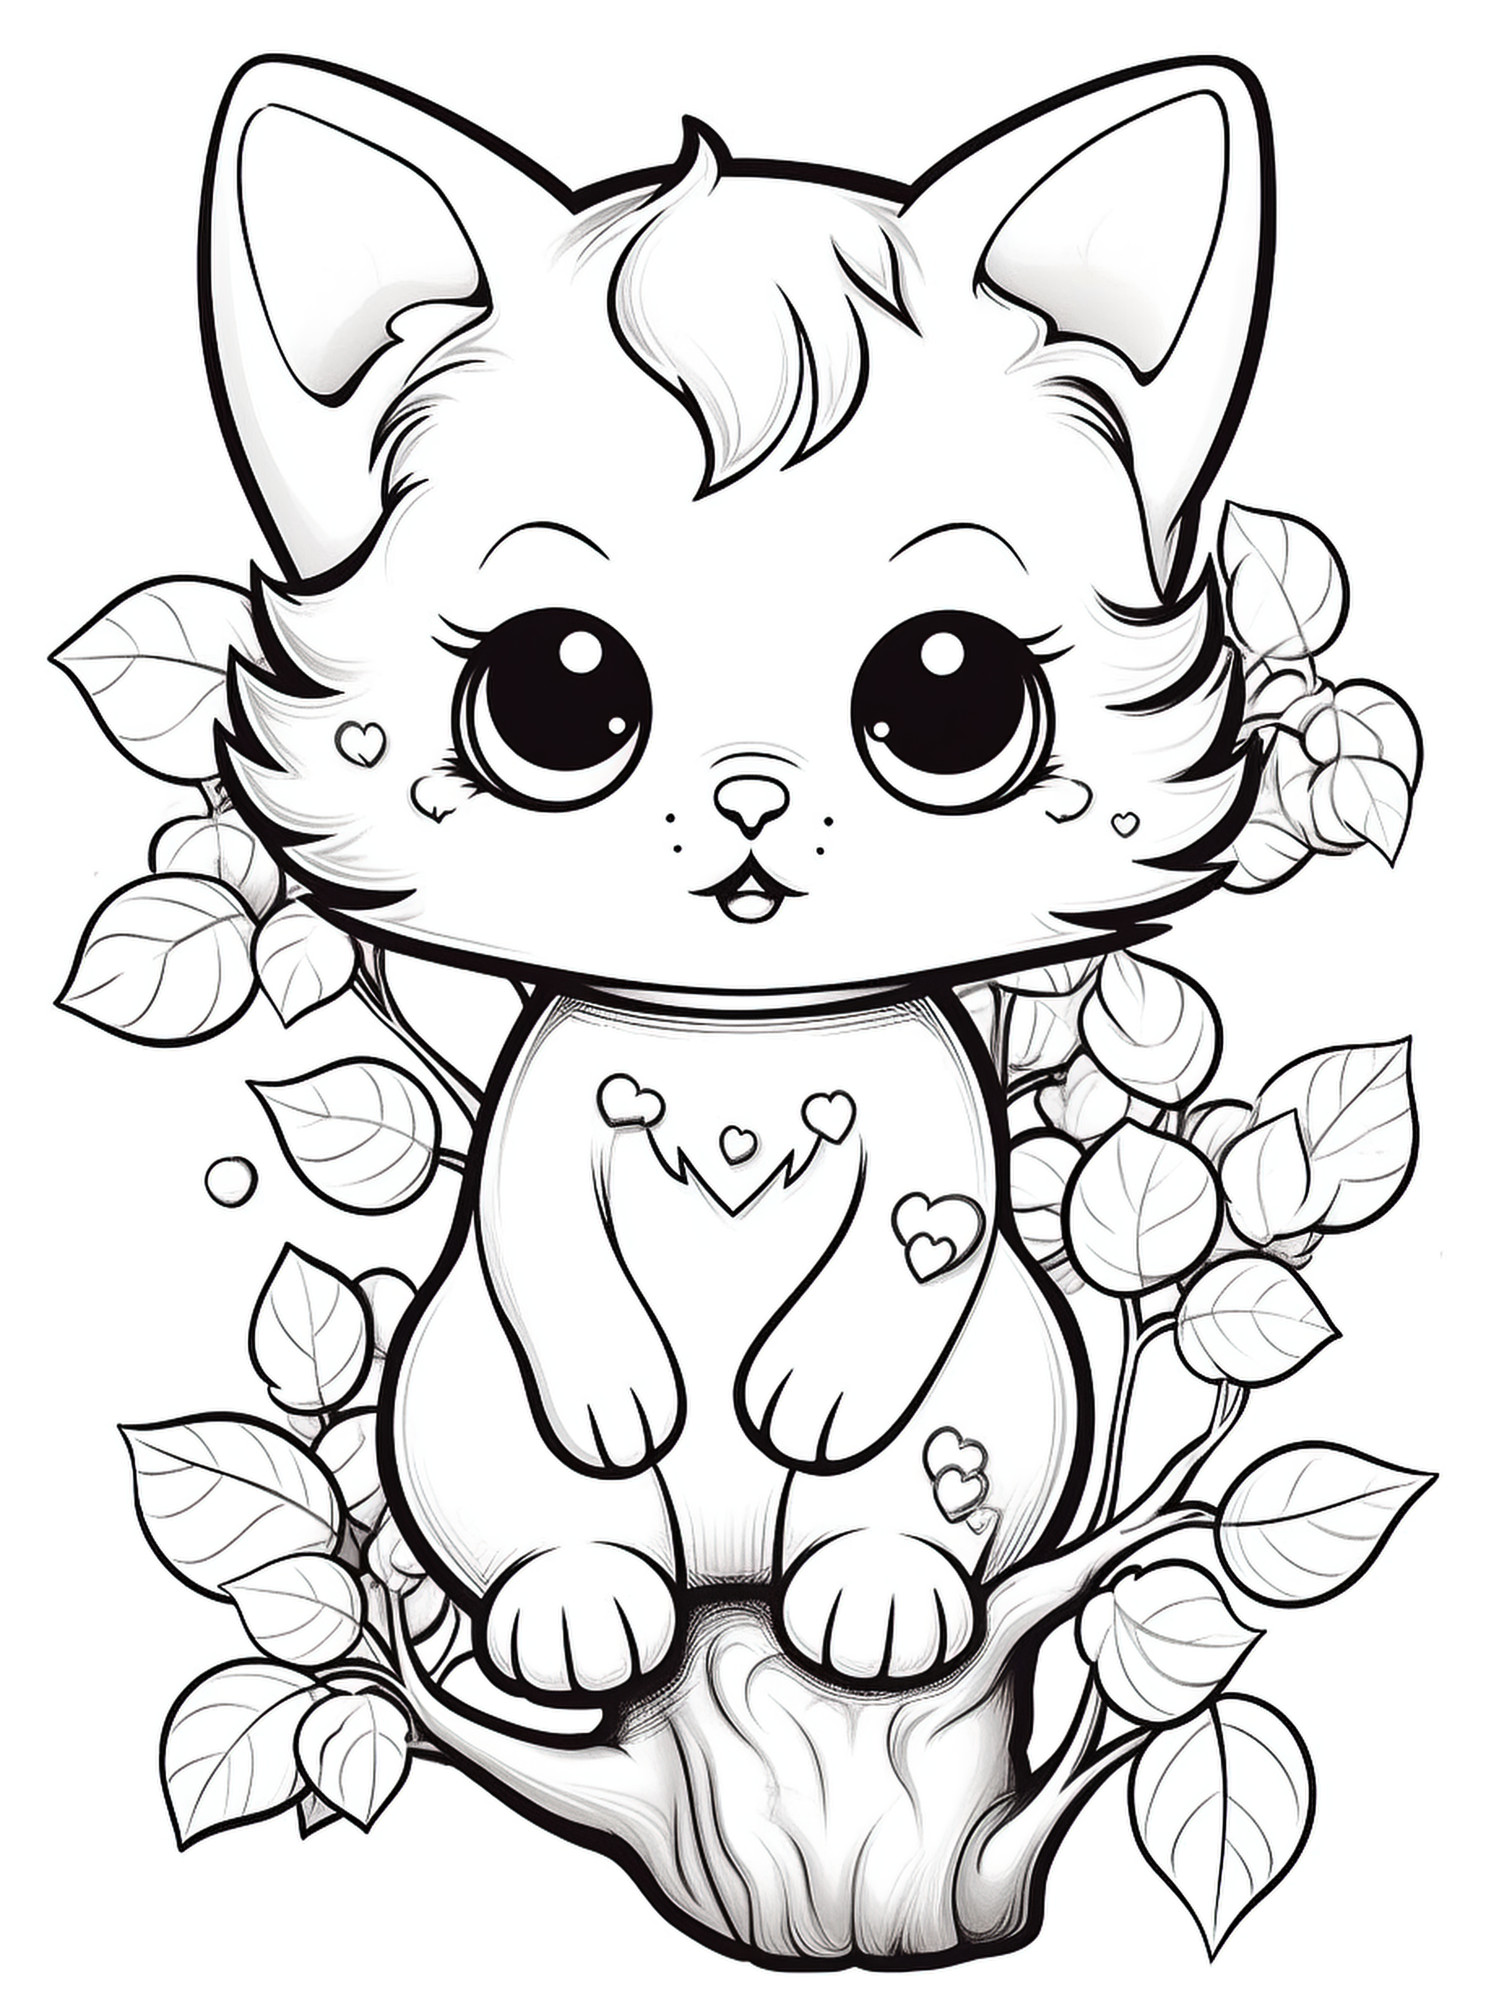 Раскраска для детей: котенок с сердечками на дереве